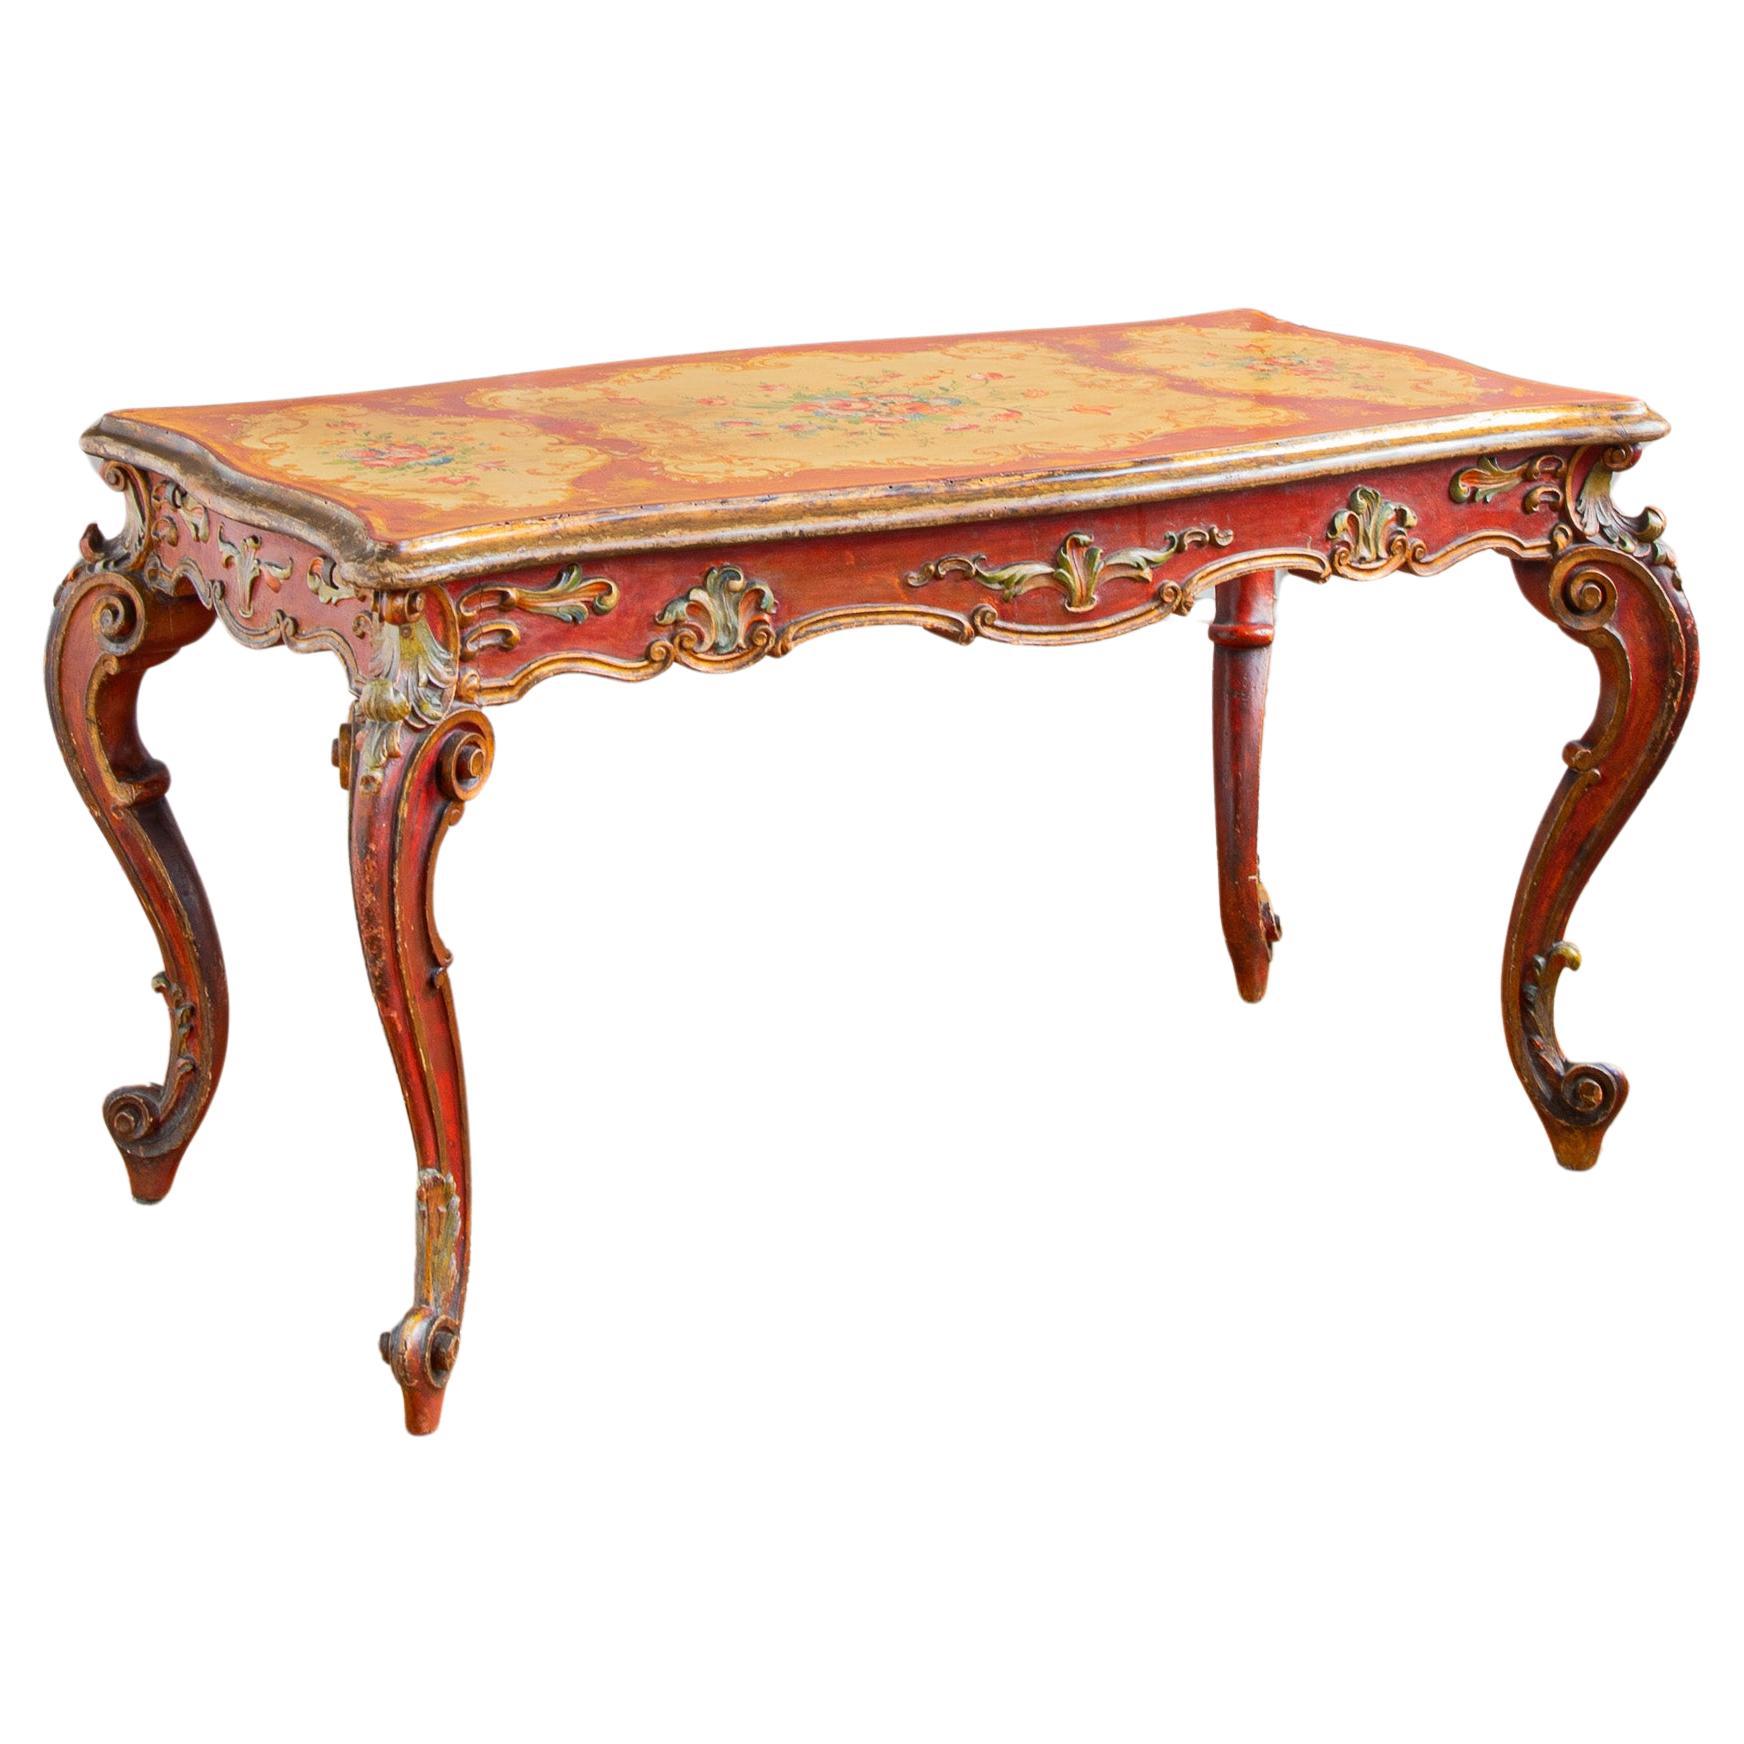  Italienischer Rokoko-Tisch des 19. Jahrhunderts, bemalt im venezianischen Stil